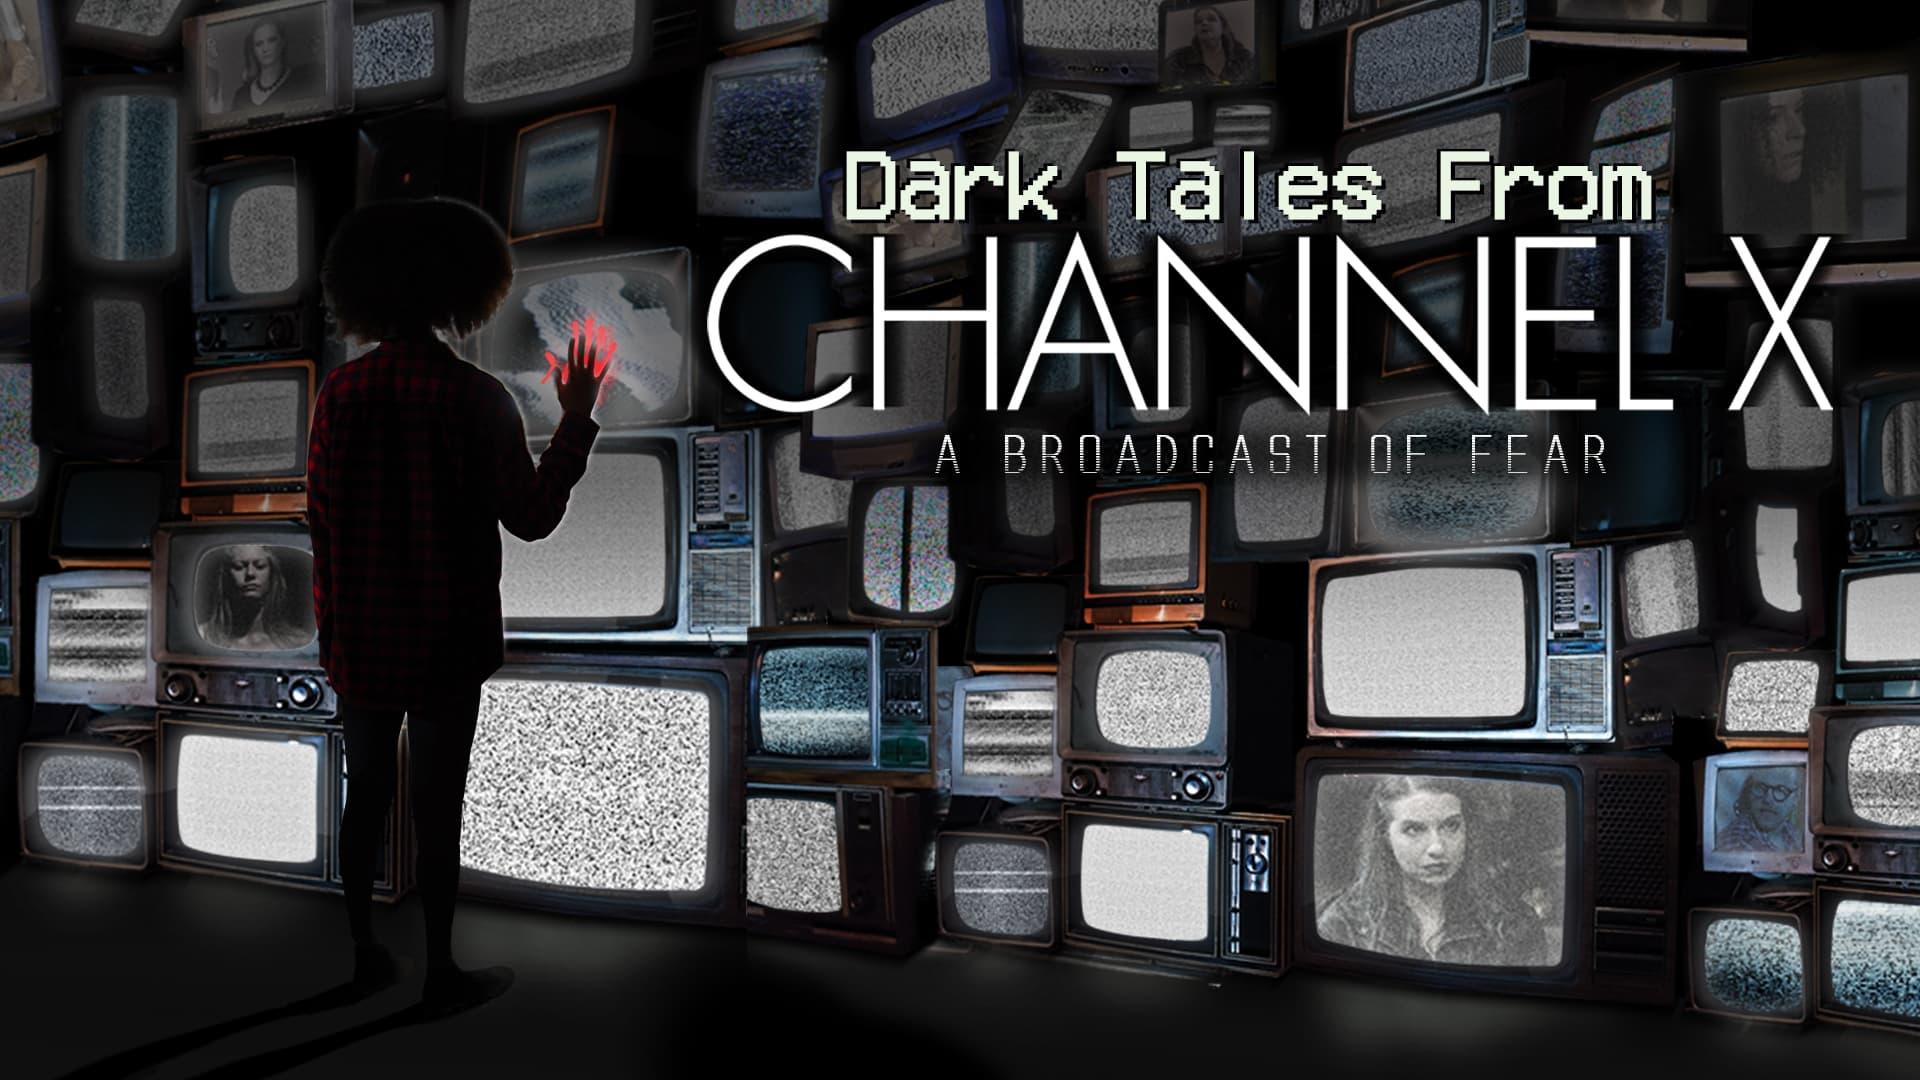 Dark Tales From Channel X backdrop